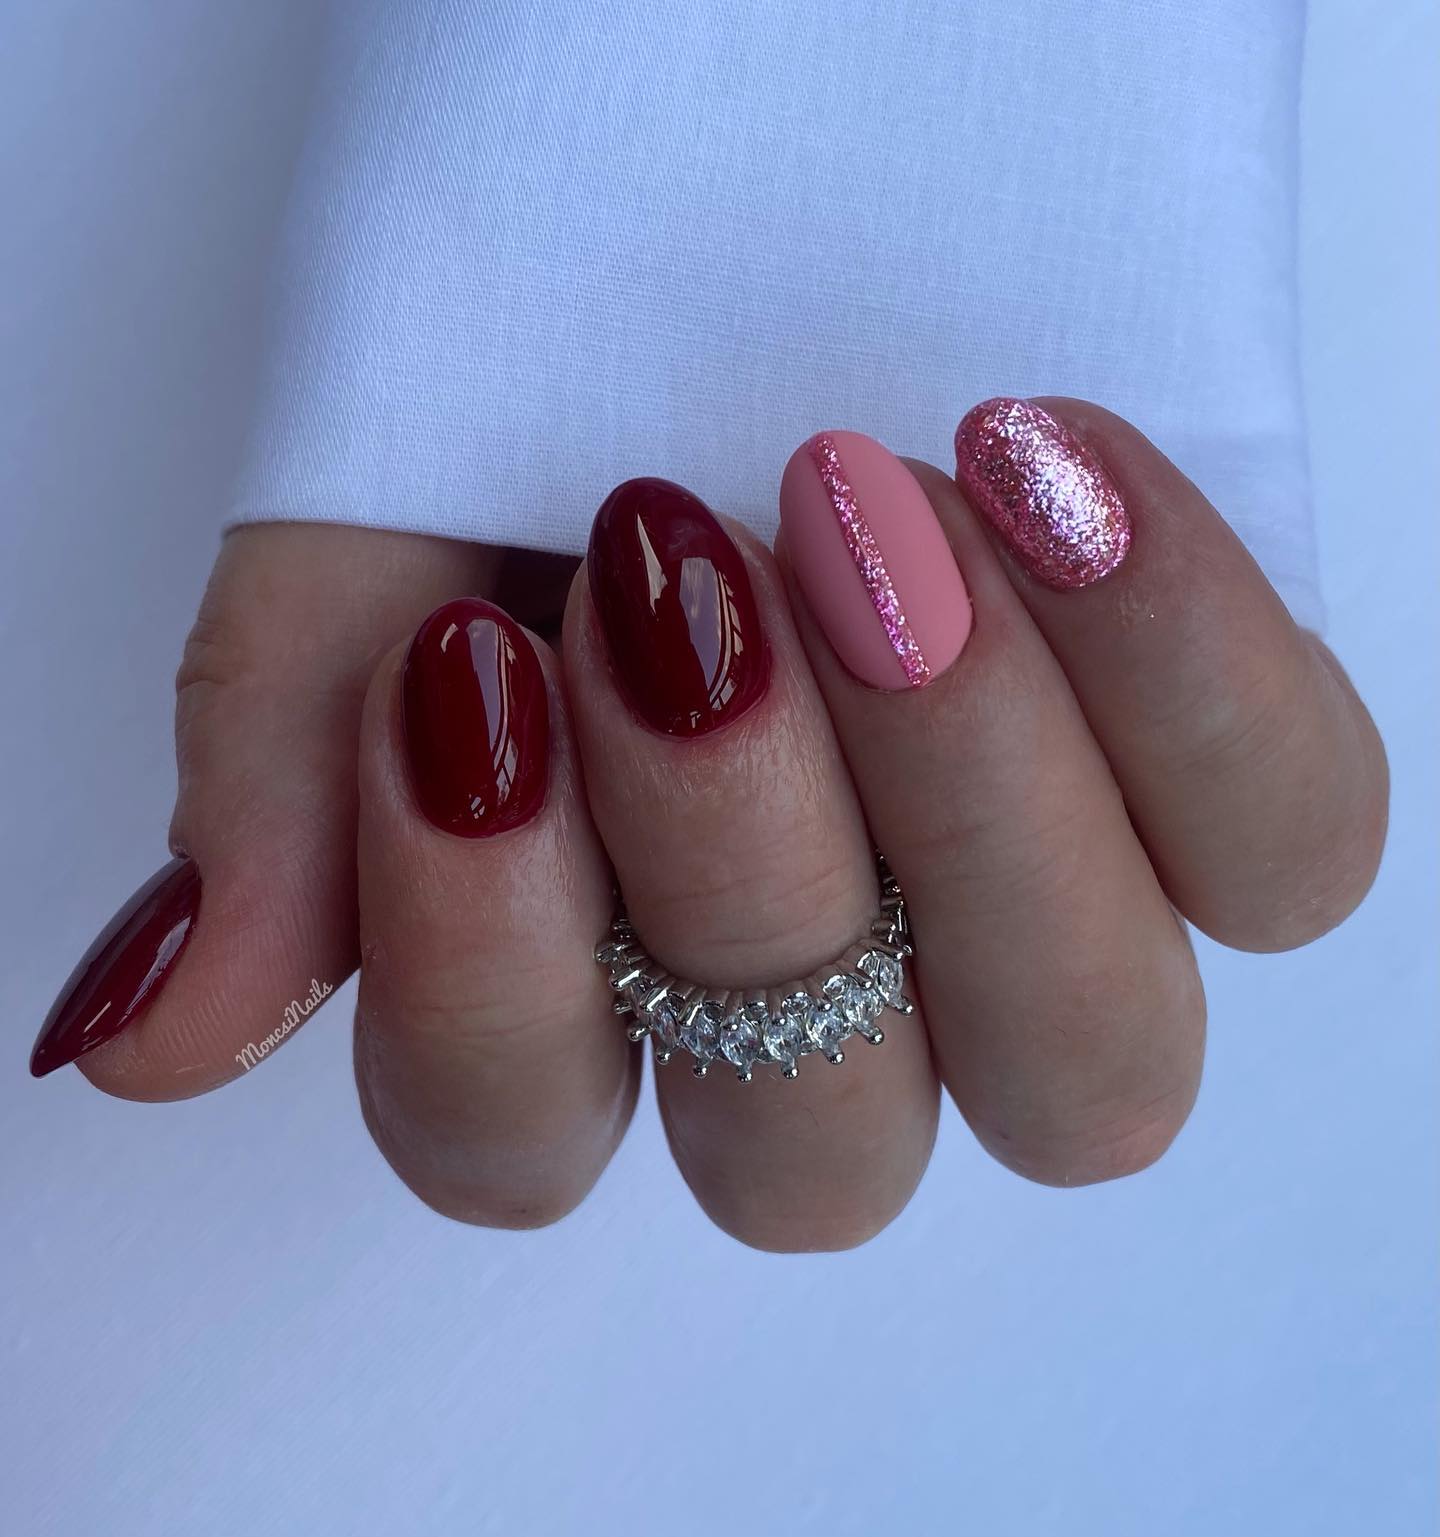 Las uñas rojas y rosas son colores muy populares en el mundo del nail art.  Estos colores desprenden energía cálida y positiva.  ¡Vamos a mezclarlos en tus uñas cortas con brillos!